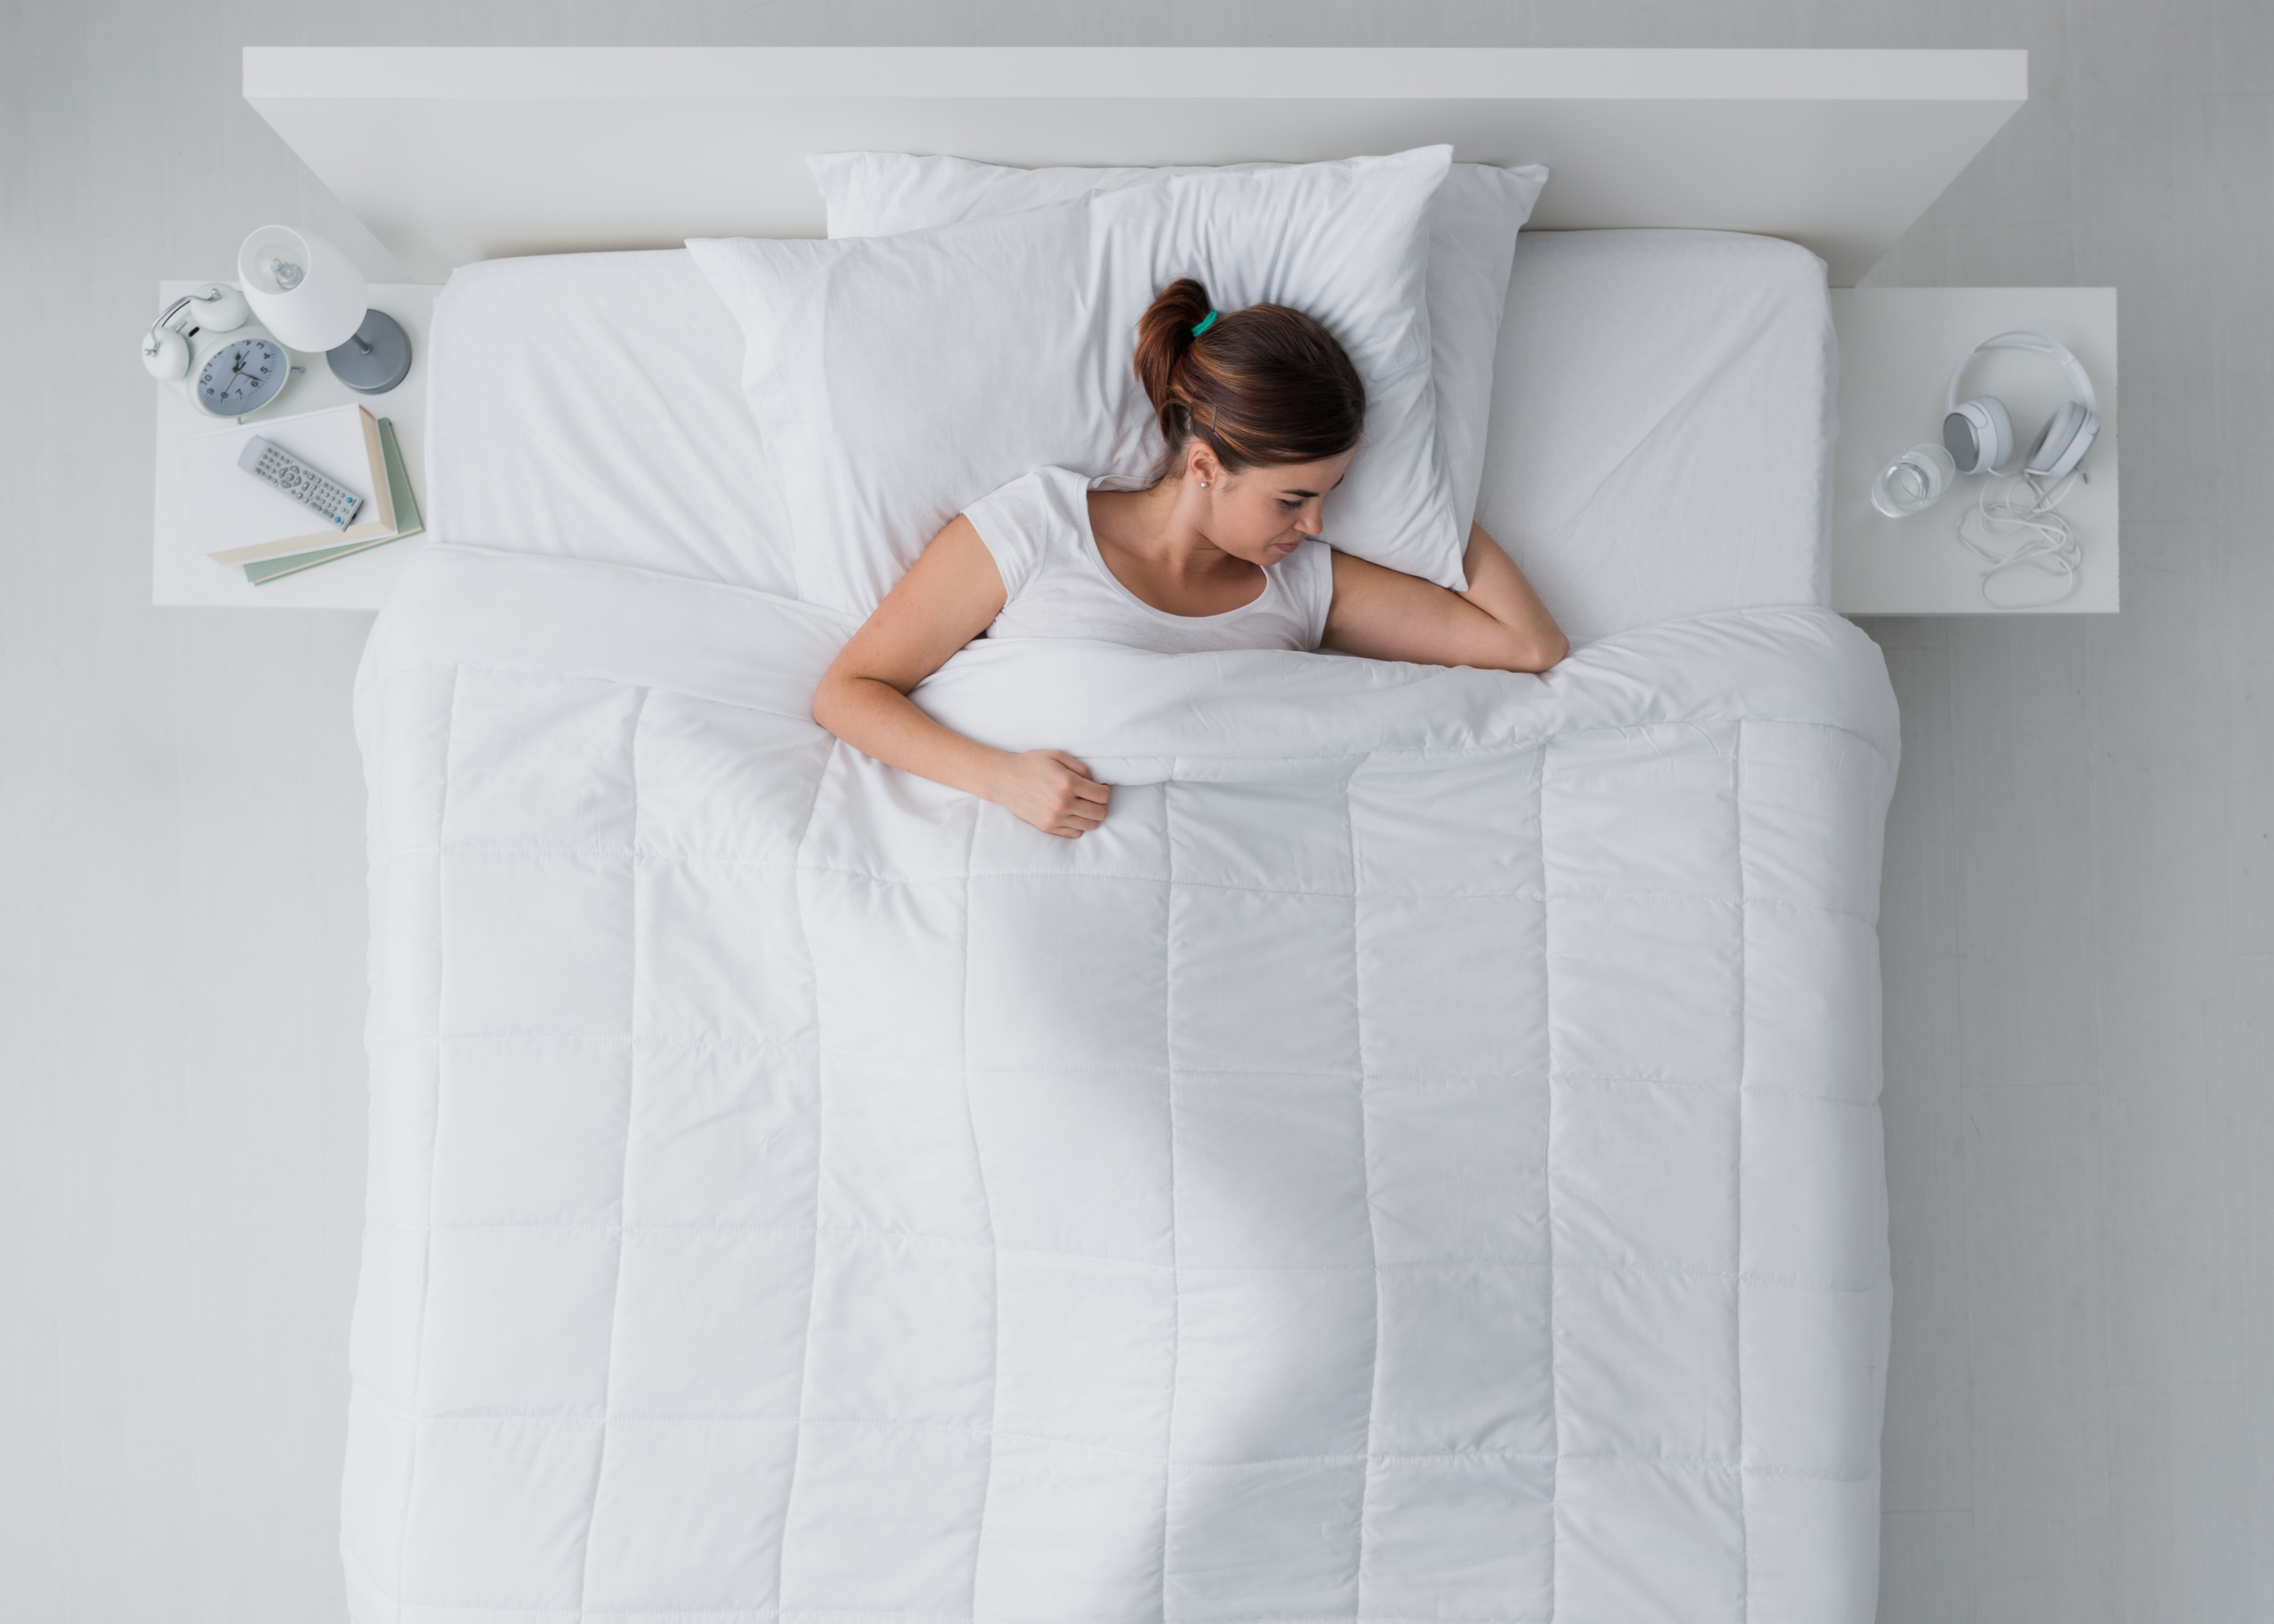 Почему спать больше 8 часов может быть вредно? Данные ученых фото к статье